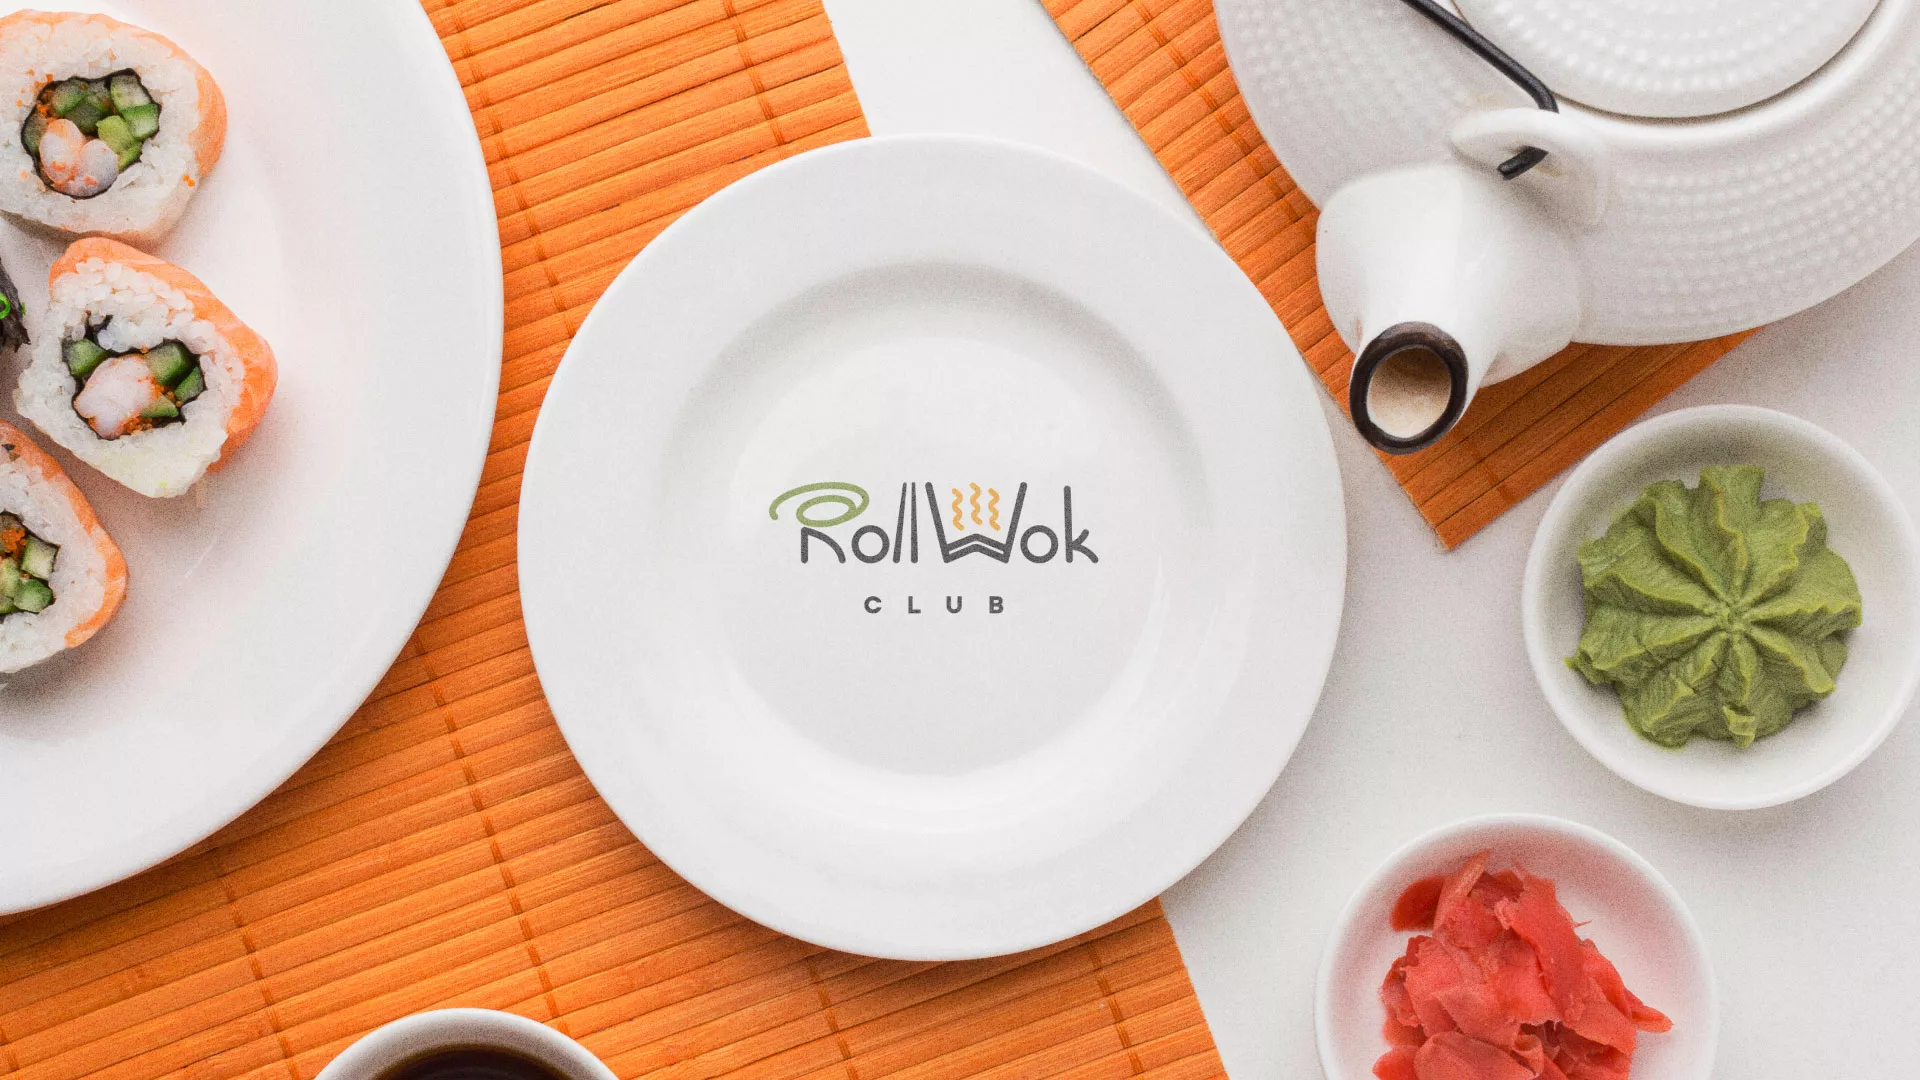 Разработка логотипа и фирменного стиля суши-бара «Roll Wok Club» в Задонске